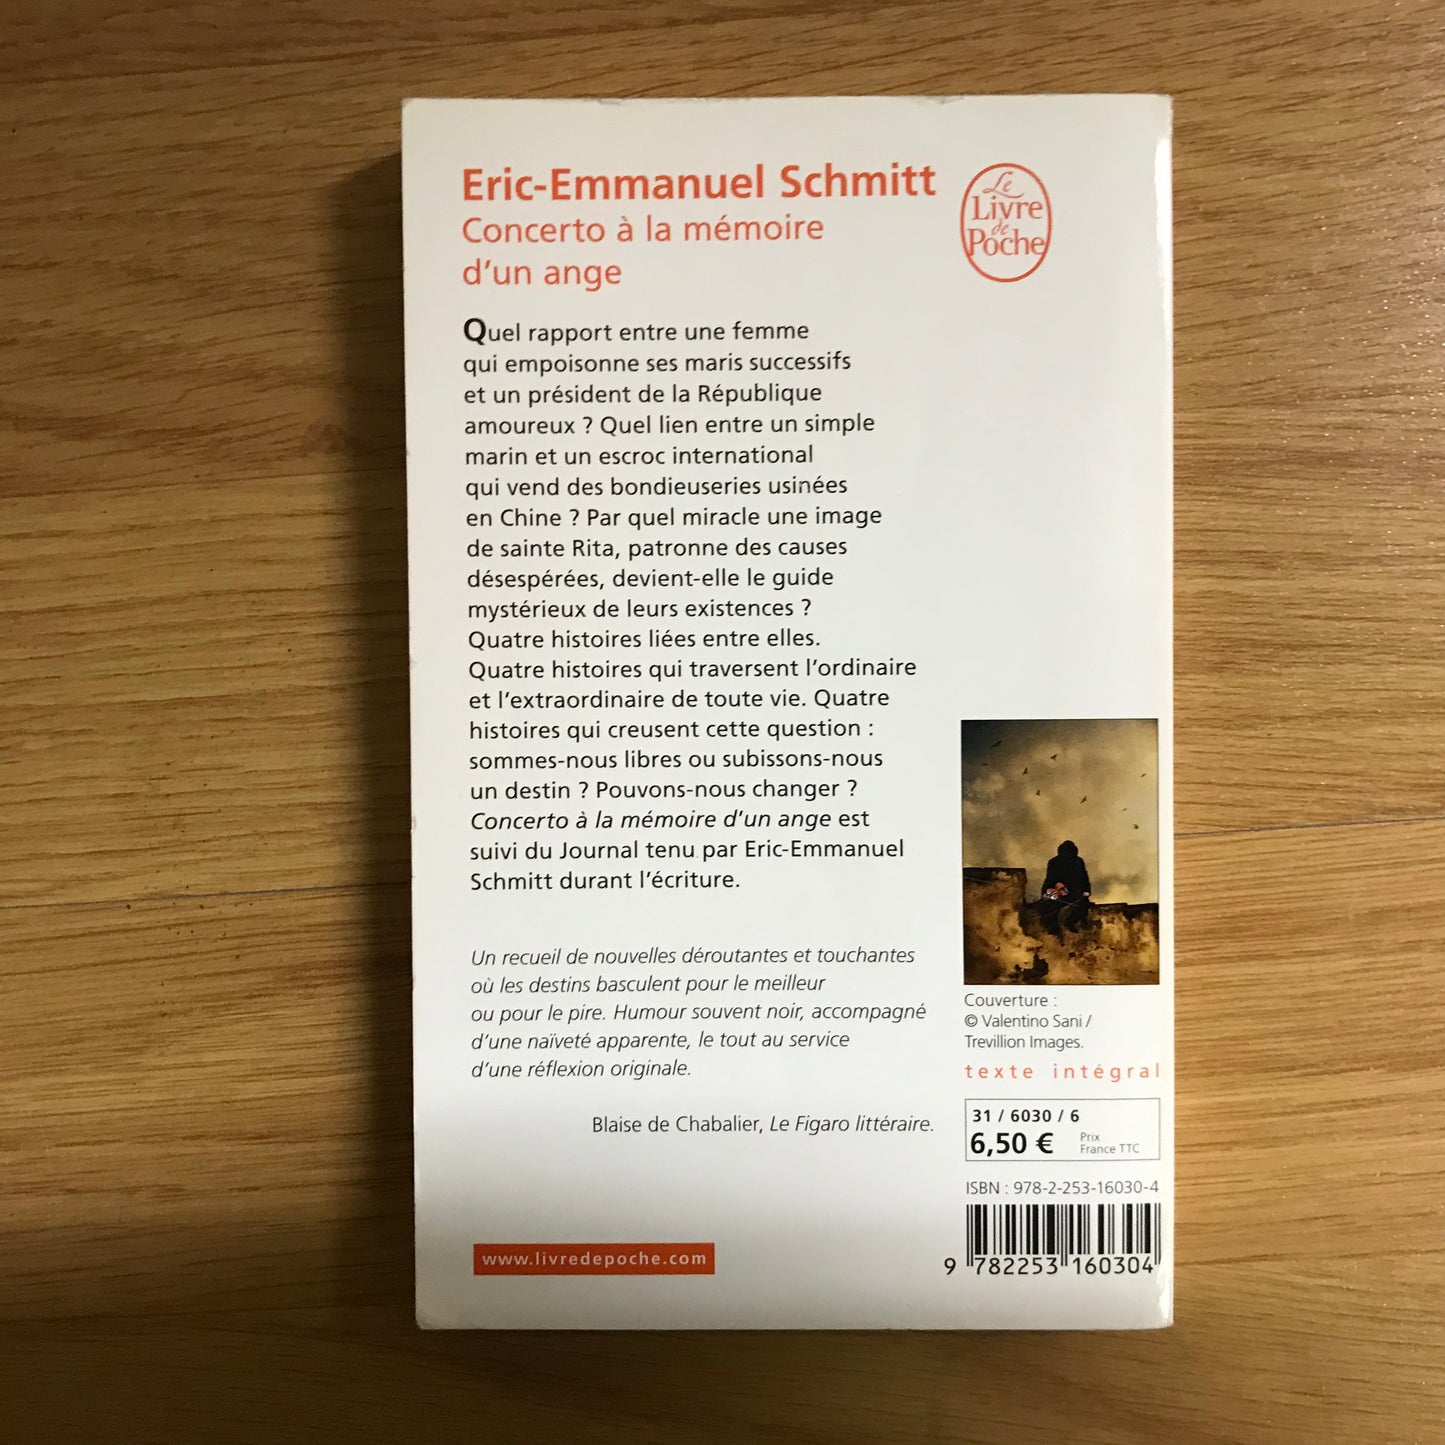 Schmitt, Eric-Emmanuel - Concerto à la mémoire d’un ange